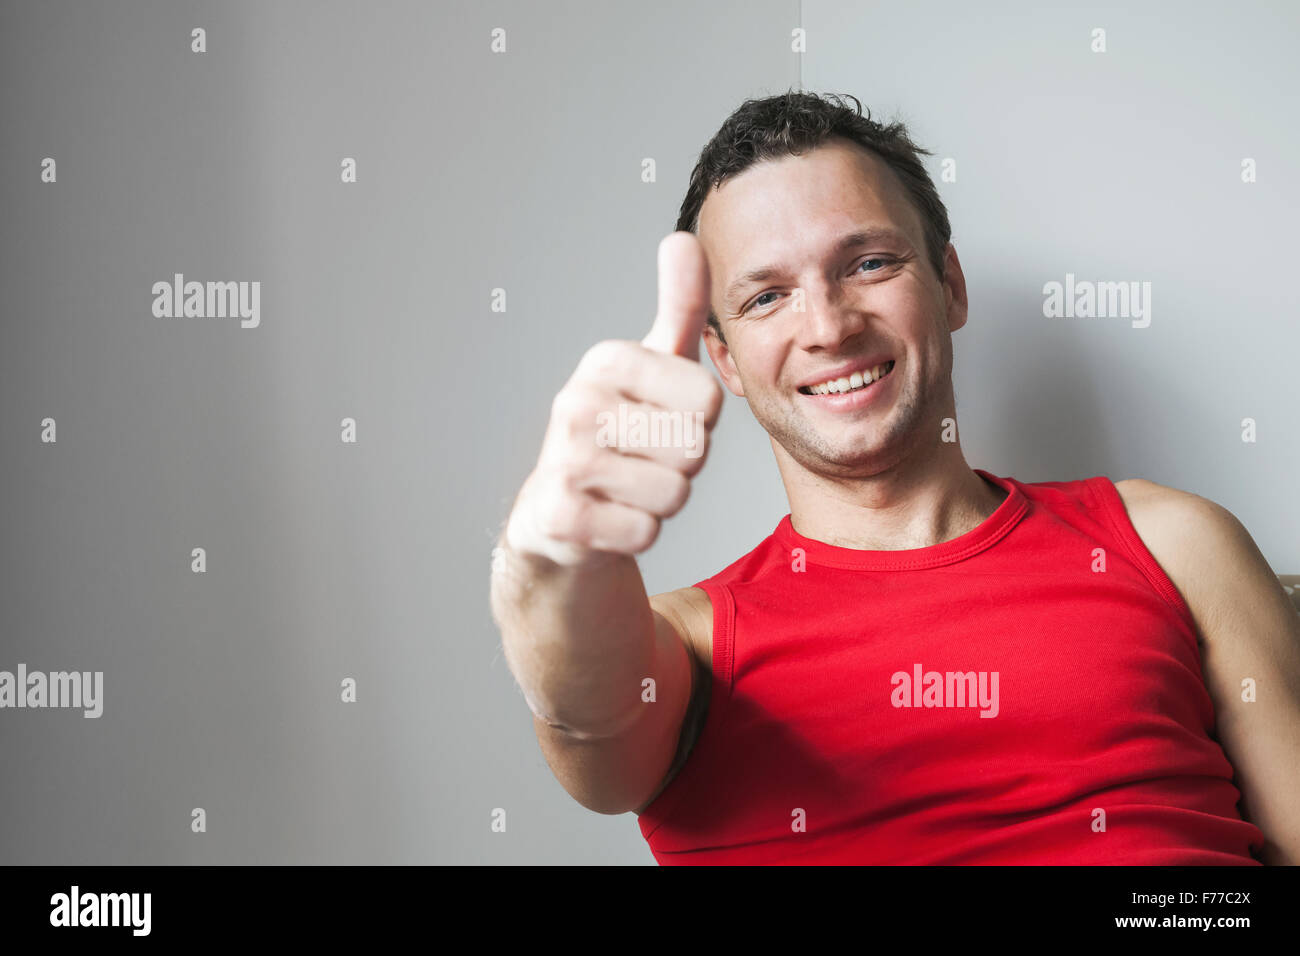 Positivo sonriente joven hombre caucásico muestra Thumbs up gesto, Retrato de estudio Foto de stock